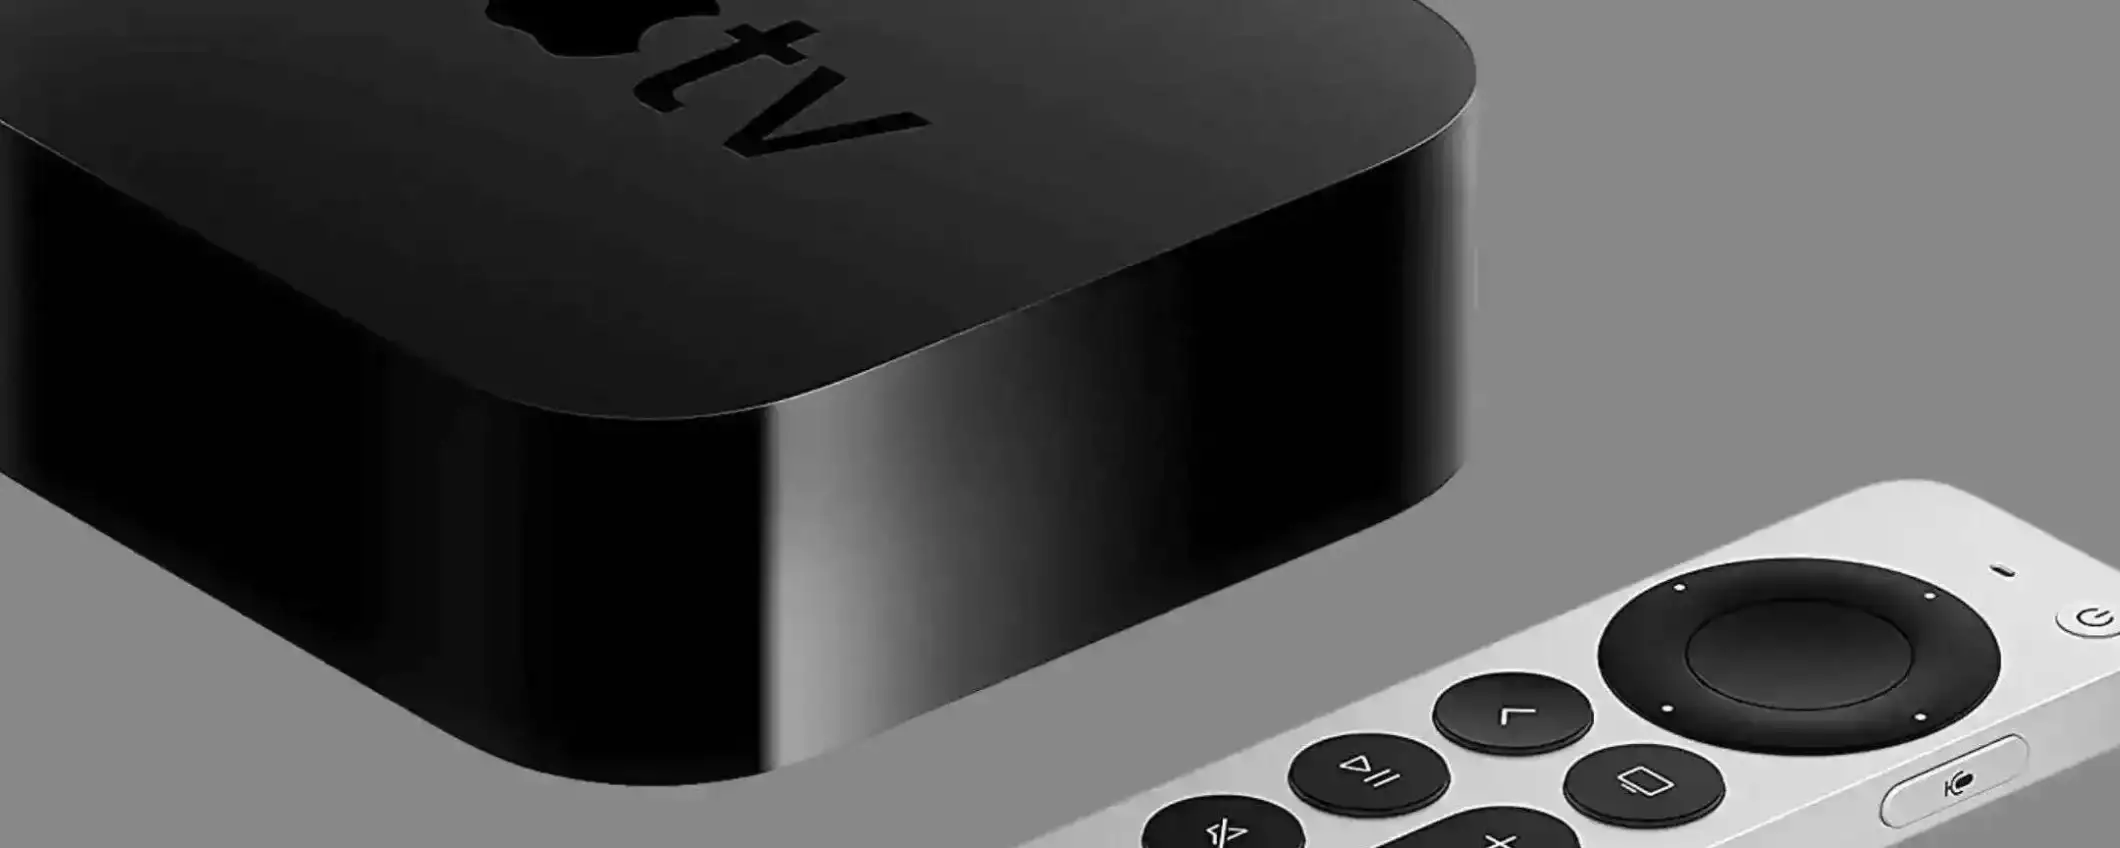 Apple TV 4K (64 GB): a soli 159€ è l'accessorio da avere